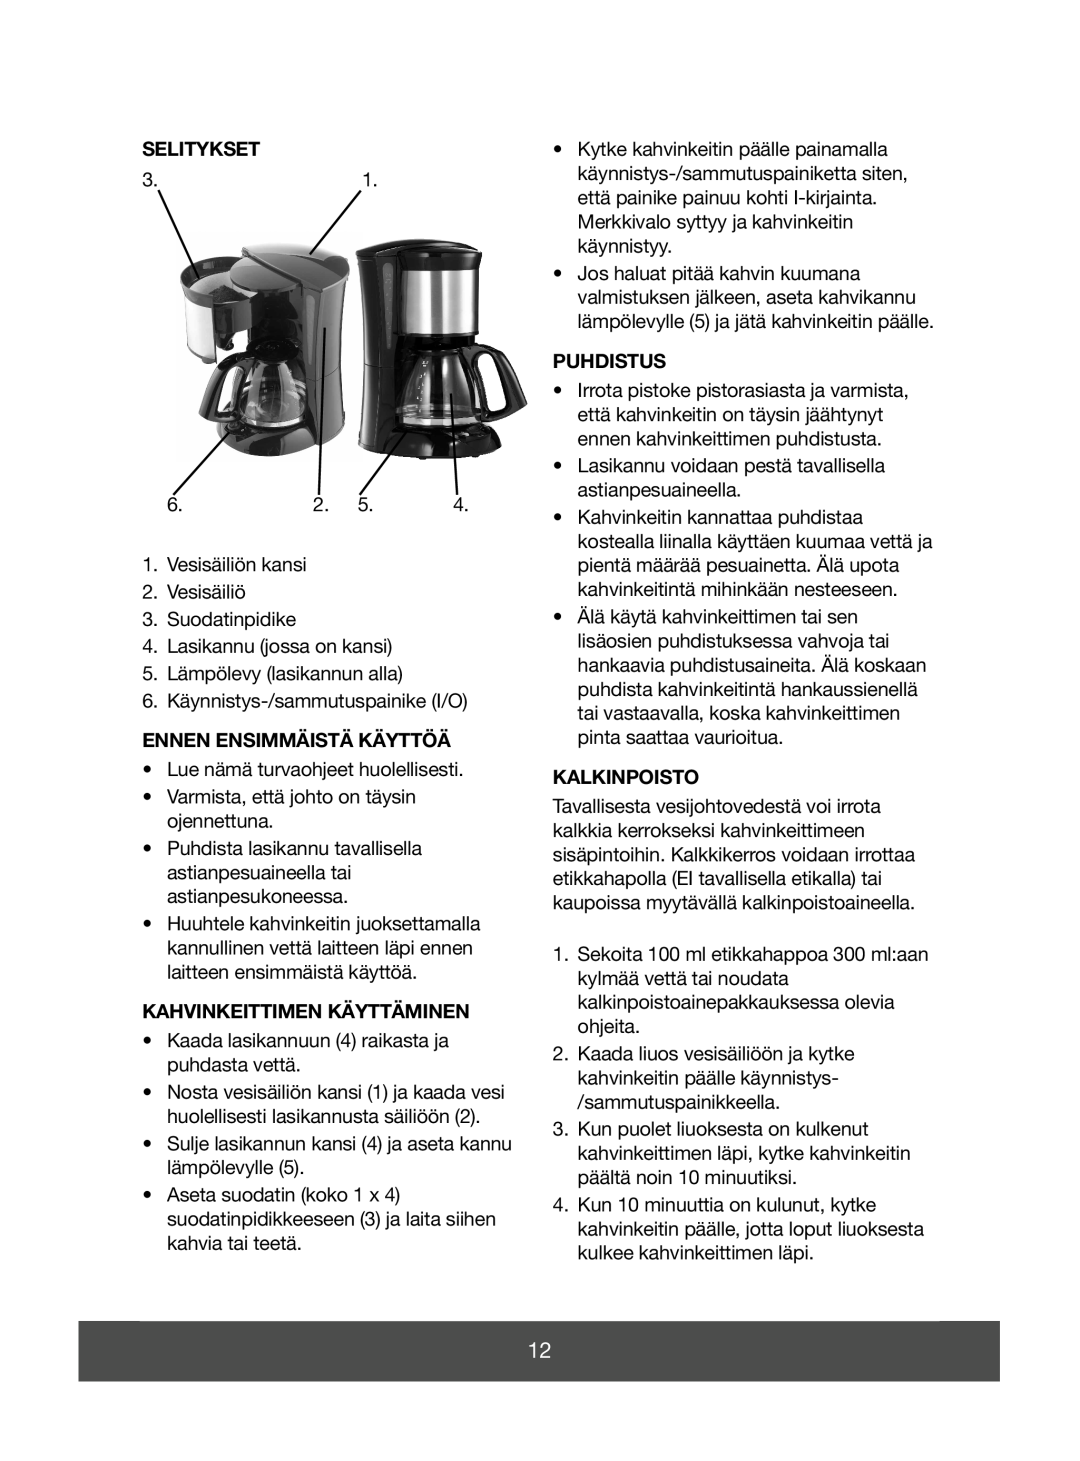 Melissa 645-085 manual Selitykset, Ennen Ensimmäistä Käyttöä, Kahvinkeittimen Käyttäminen, Puhdistus, Kalkinpoisto 